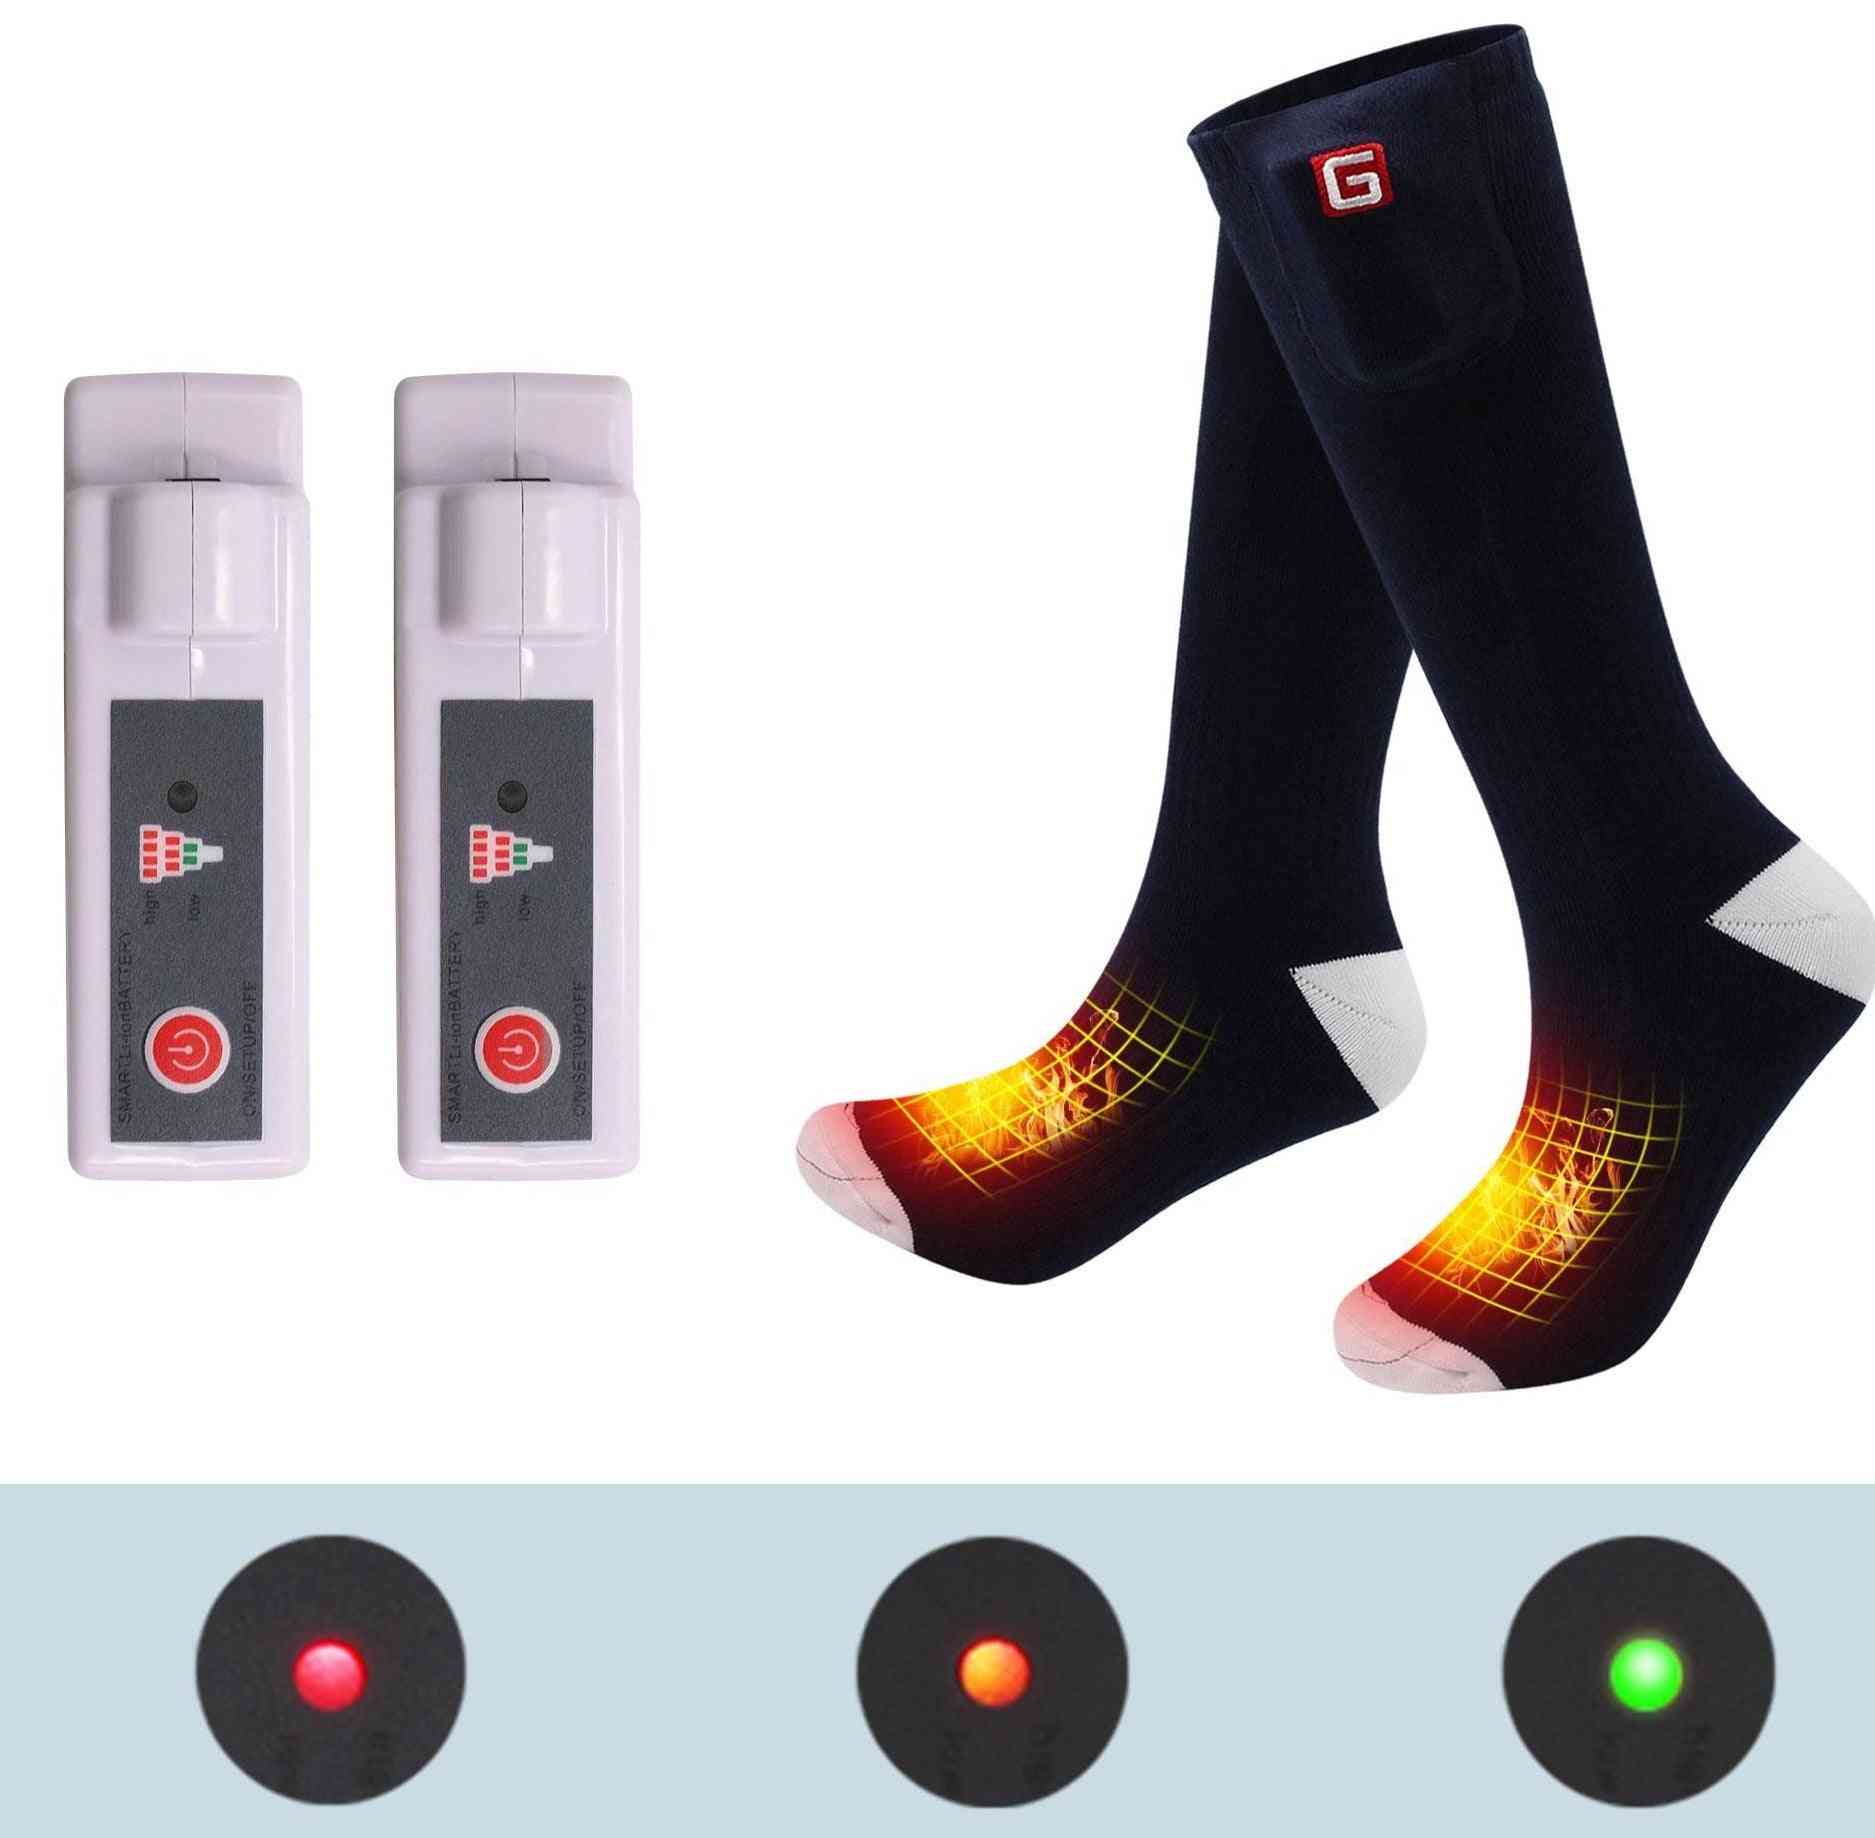 Wiederaufladbare Batterien für elektrisch beheizte Socken, Heizhandschuhe